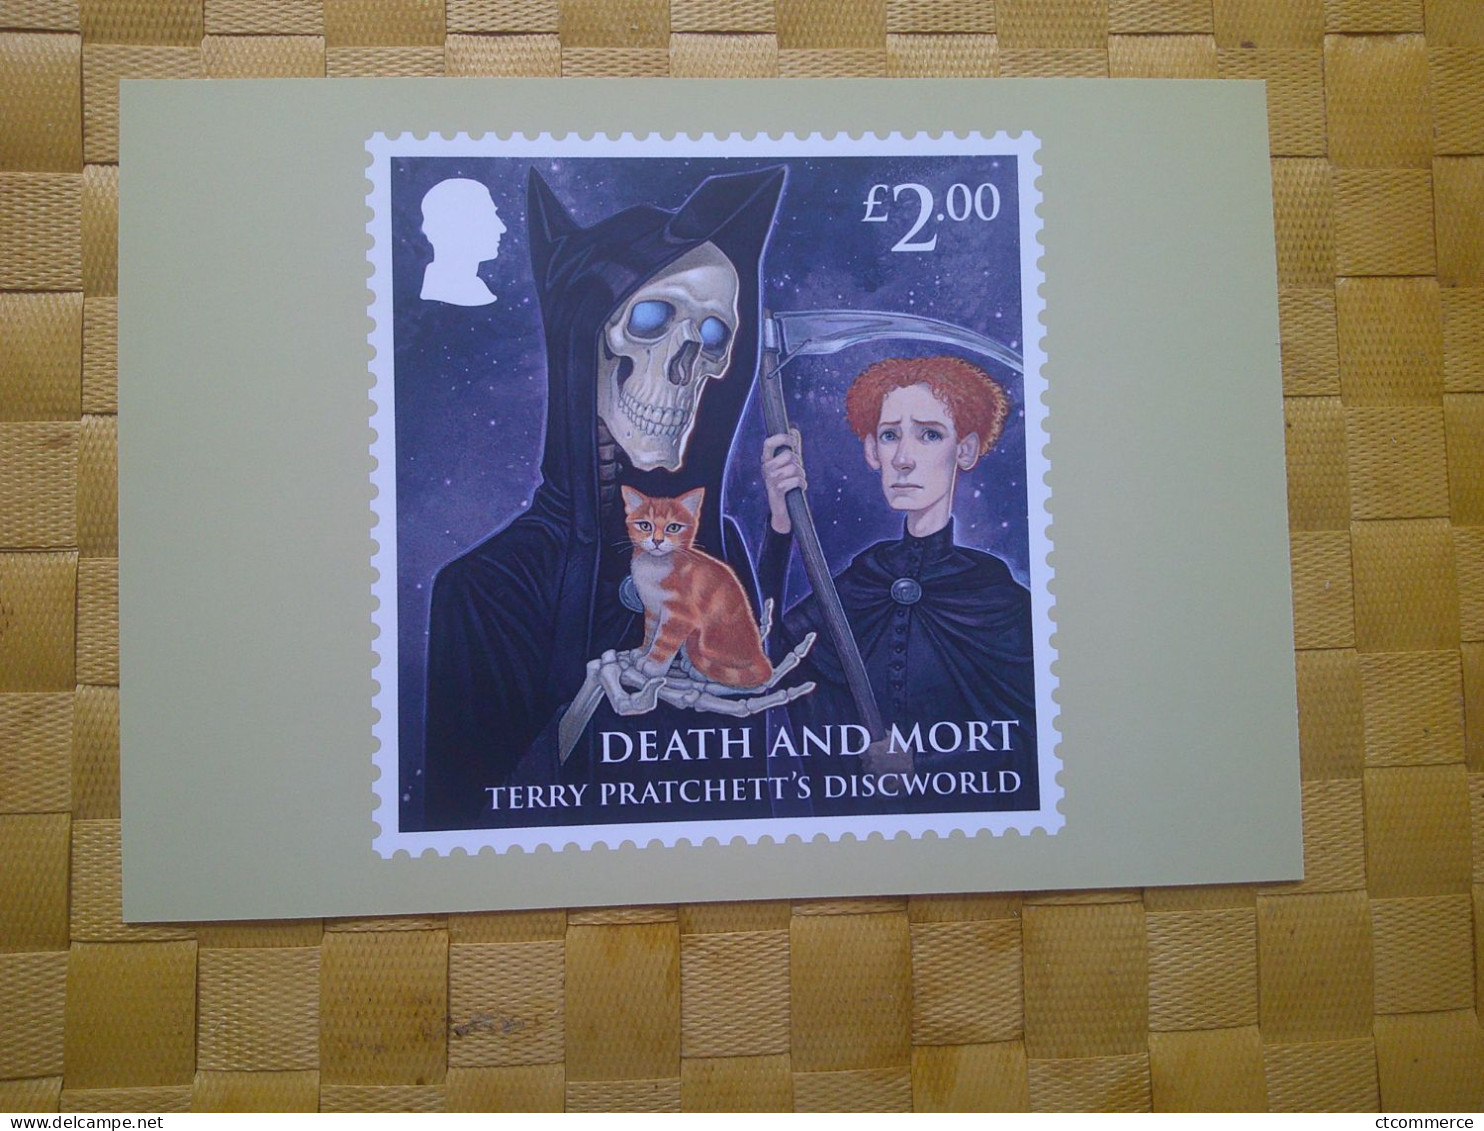 8 cartes postales PHQ représentaion de timbre, Terry Pratchett's Discworld